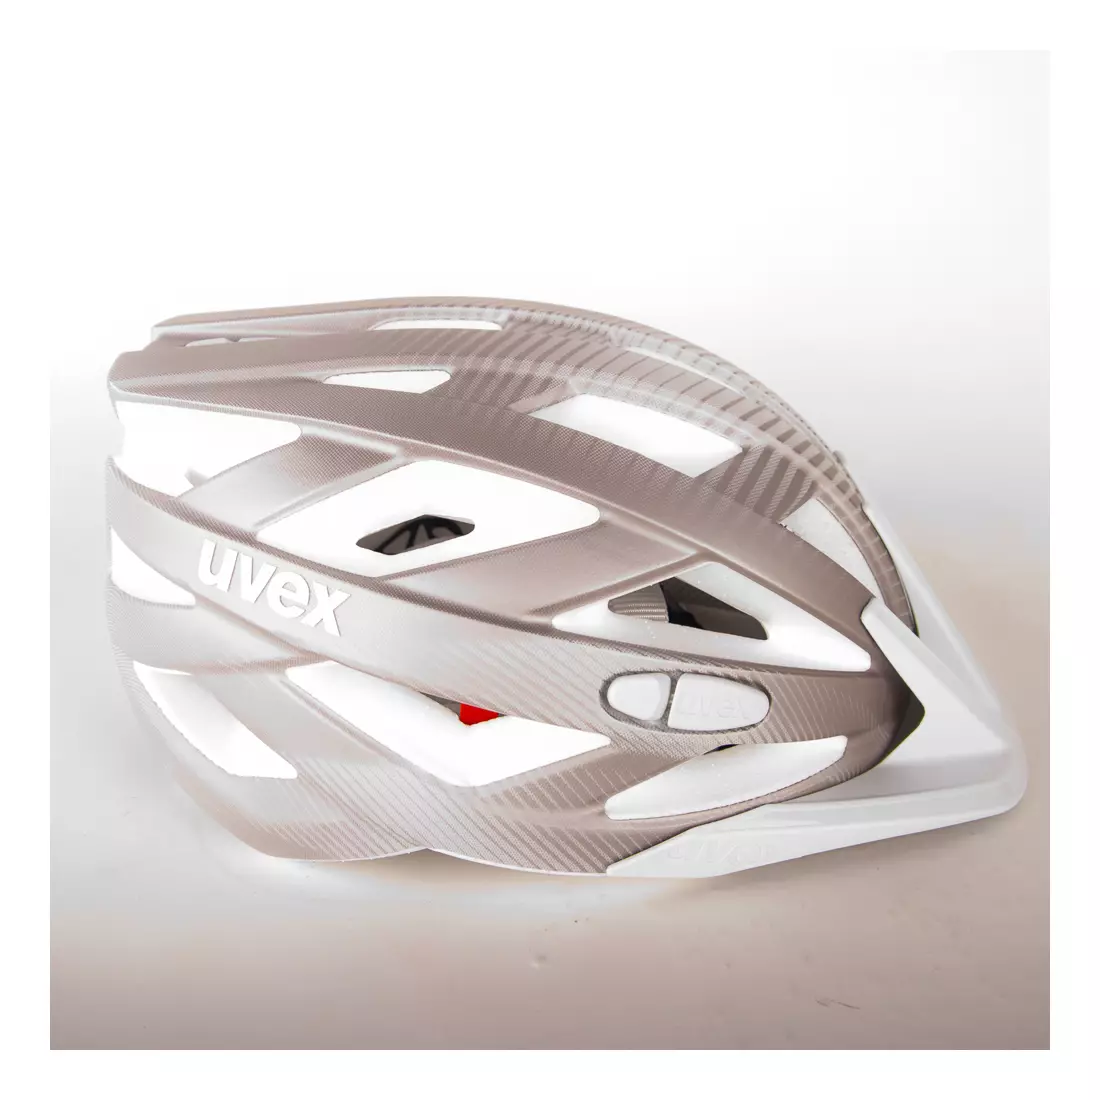 UVEX I-vo cc bicycle helmet, rose gold, matt